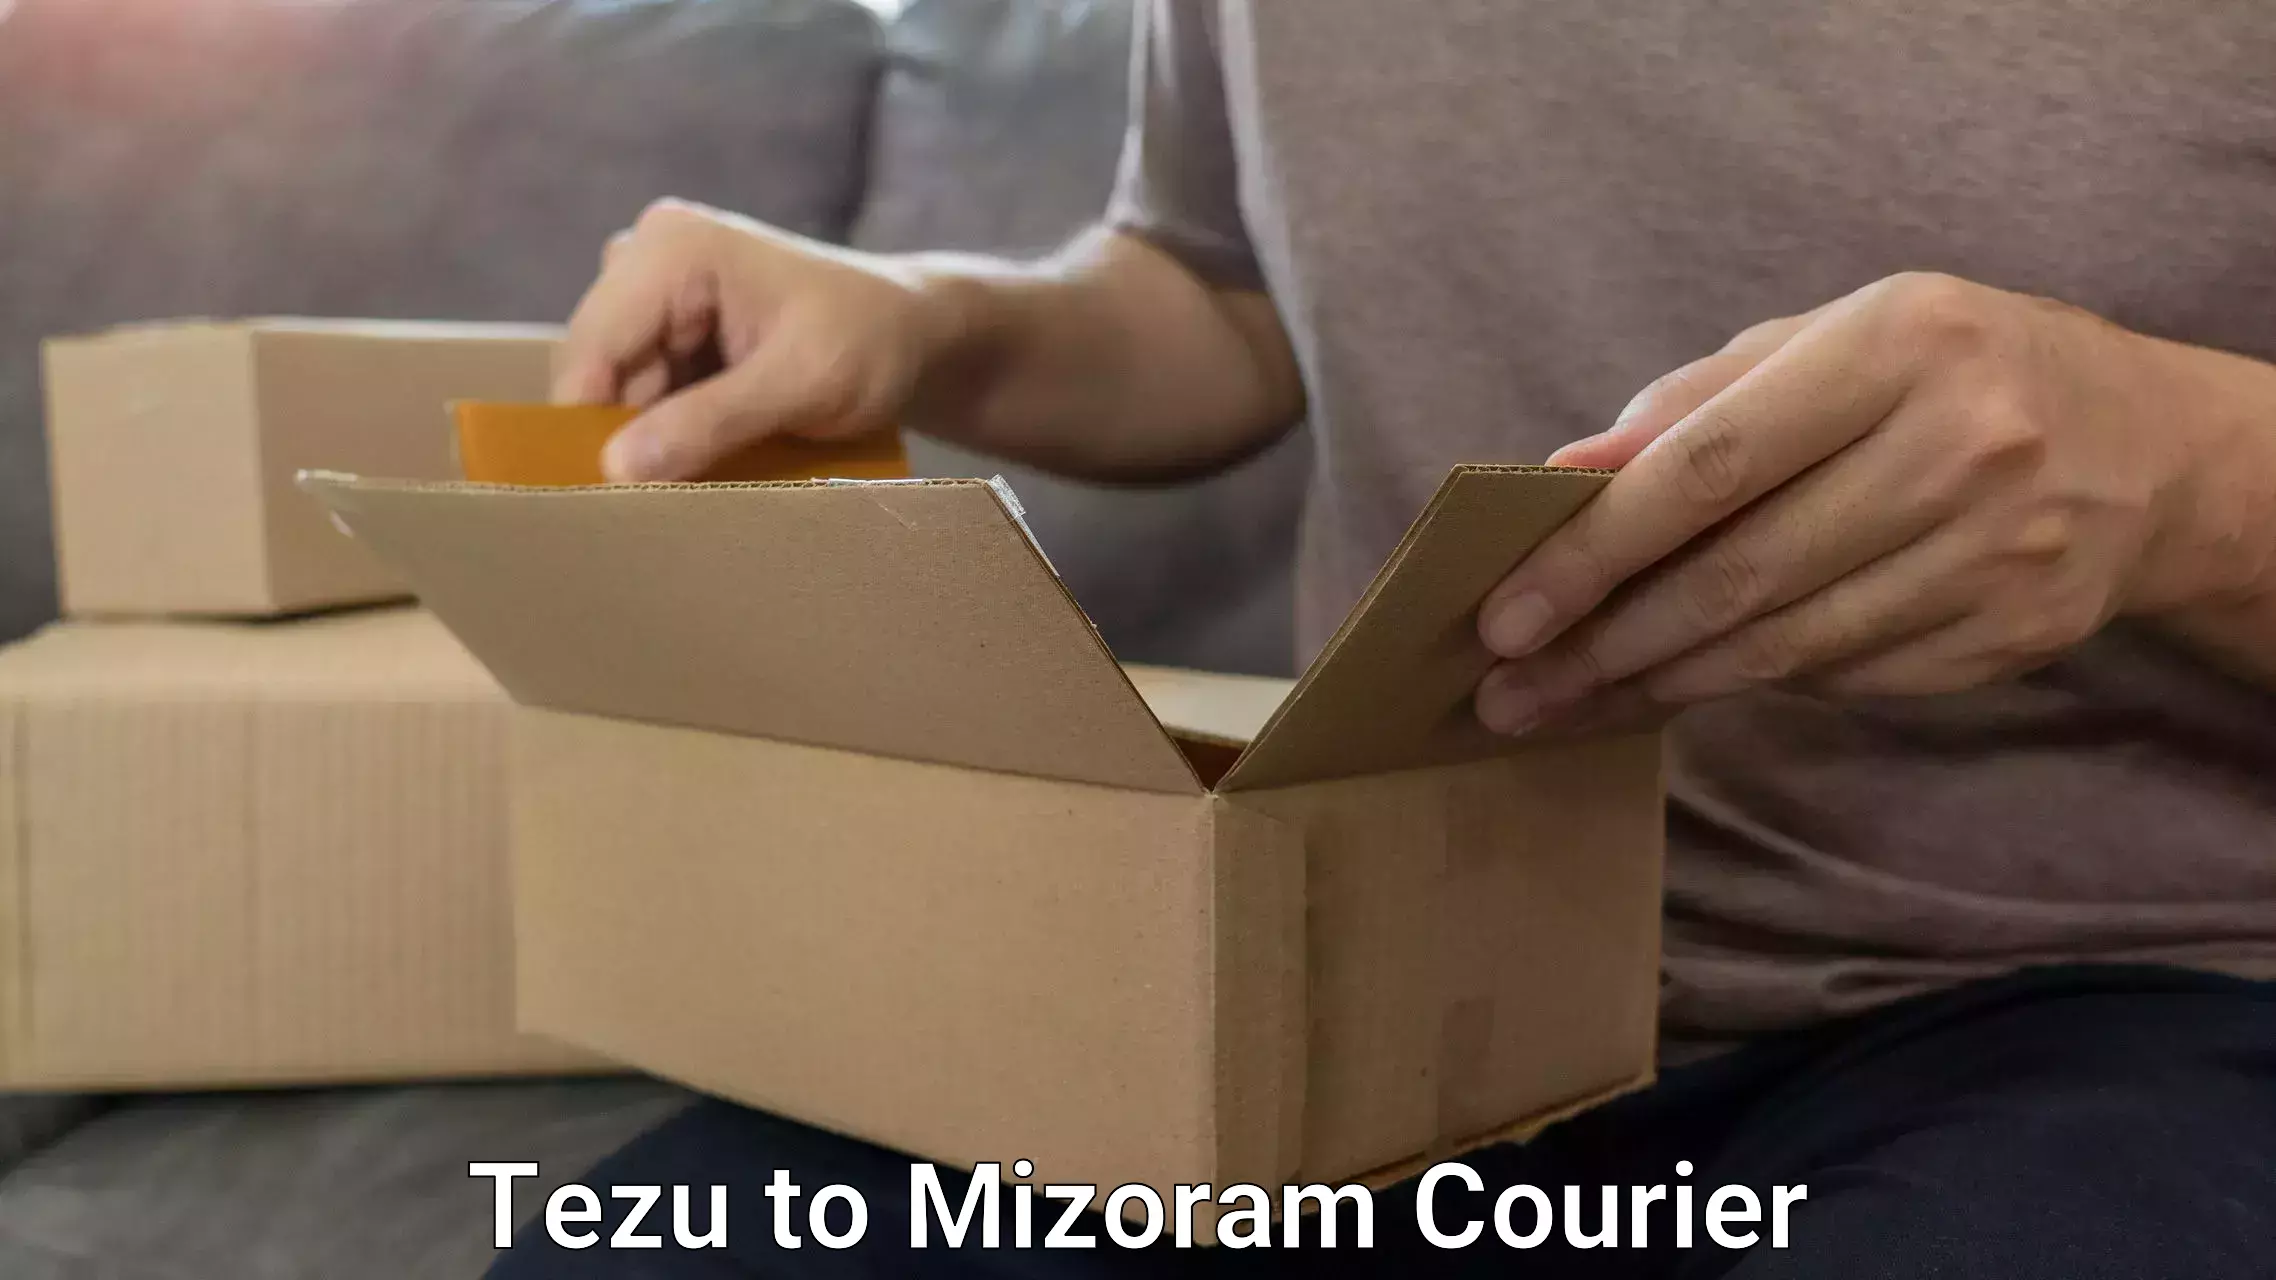 Door-to-door baggage service Tezu to Mizoram